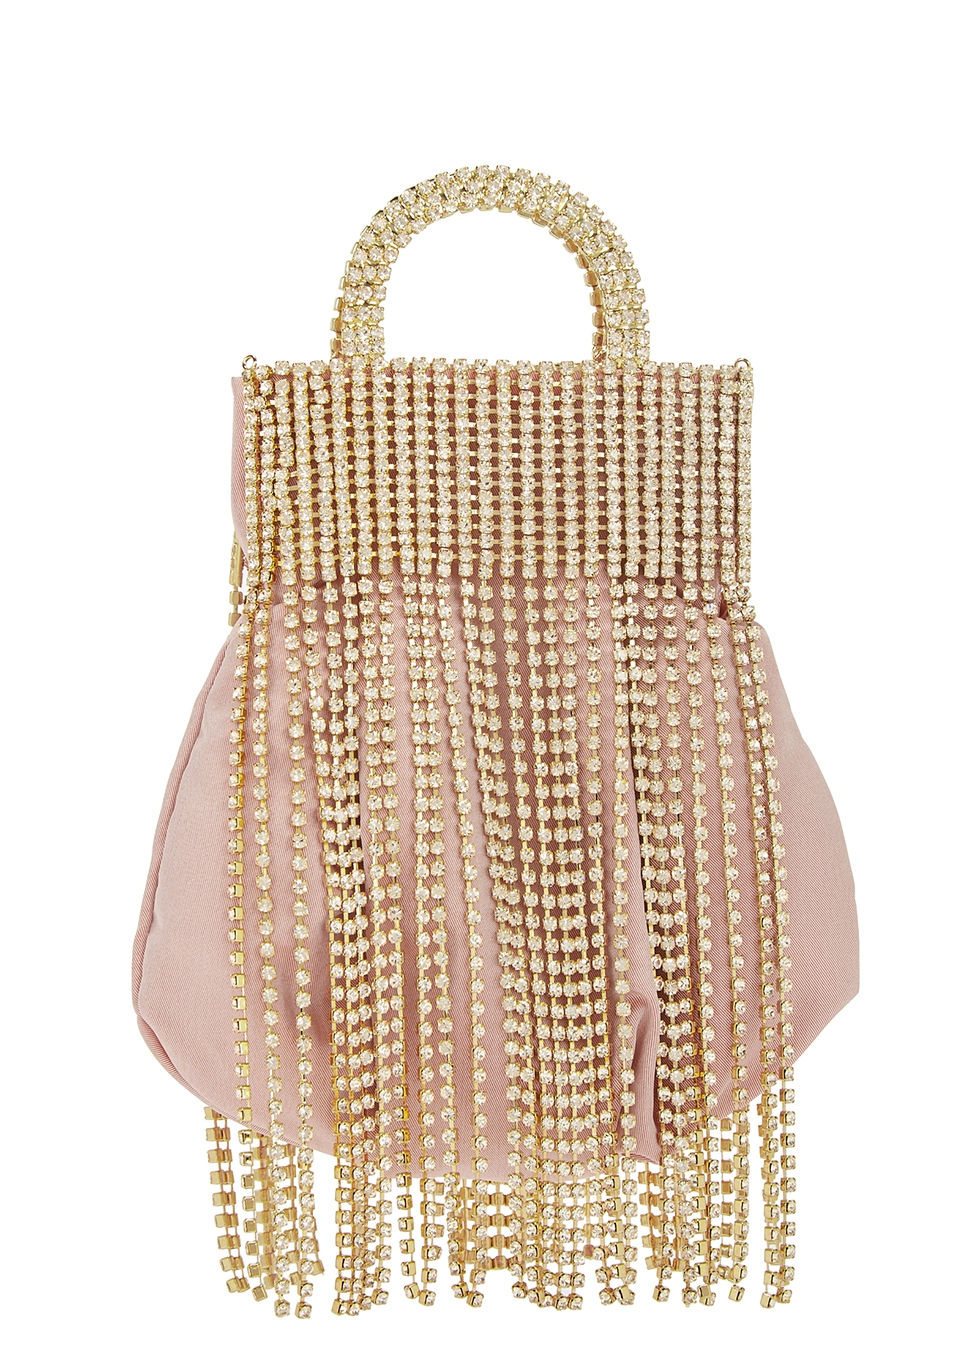 Follie fringe-embellished top handle bag